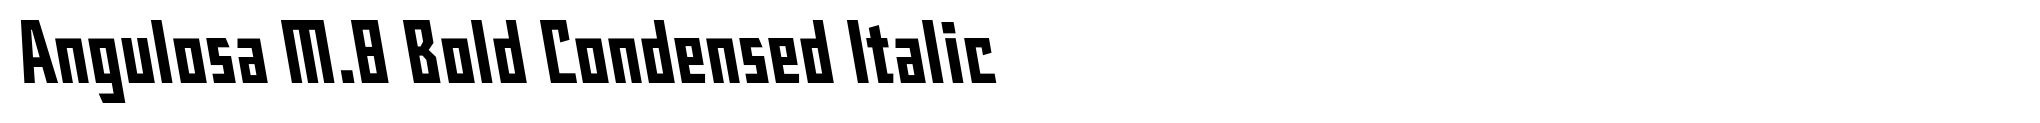 Angulosa M.8 Bold Condensed Italic image